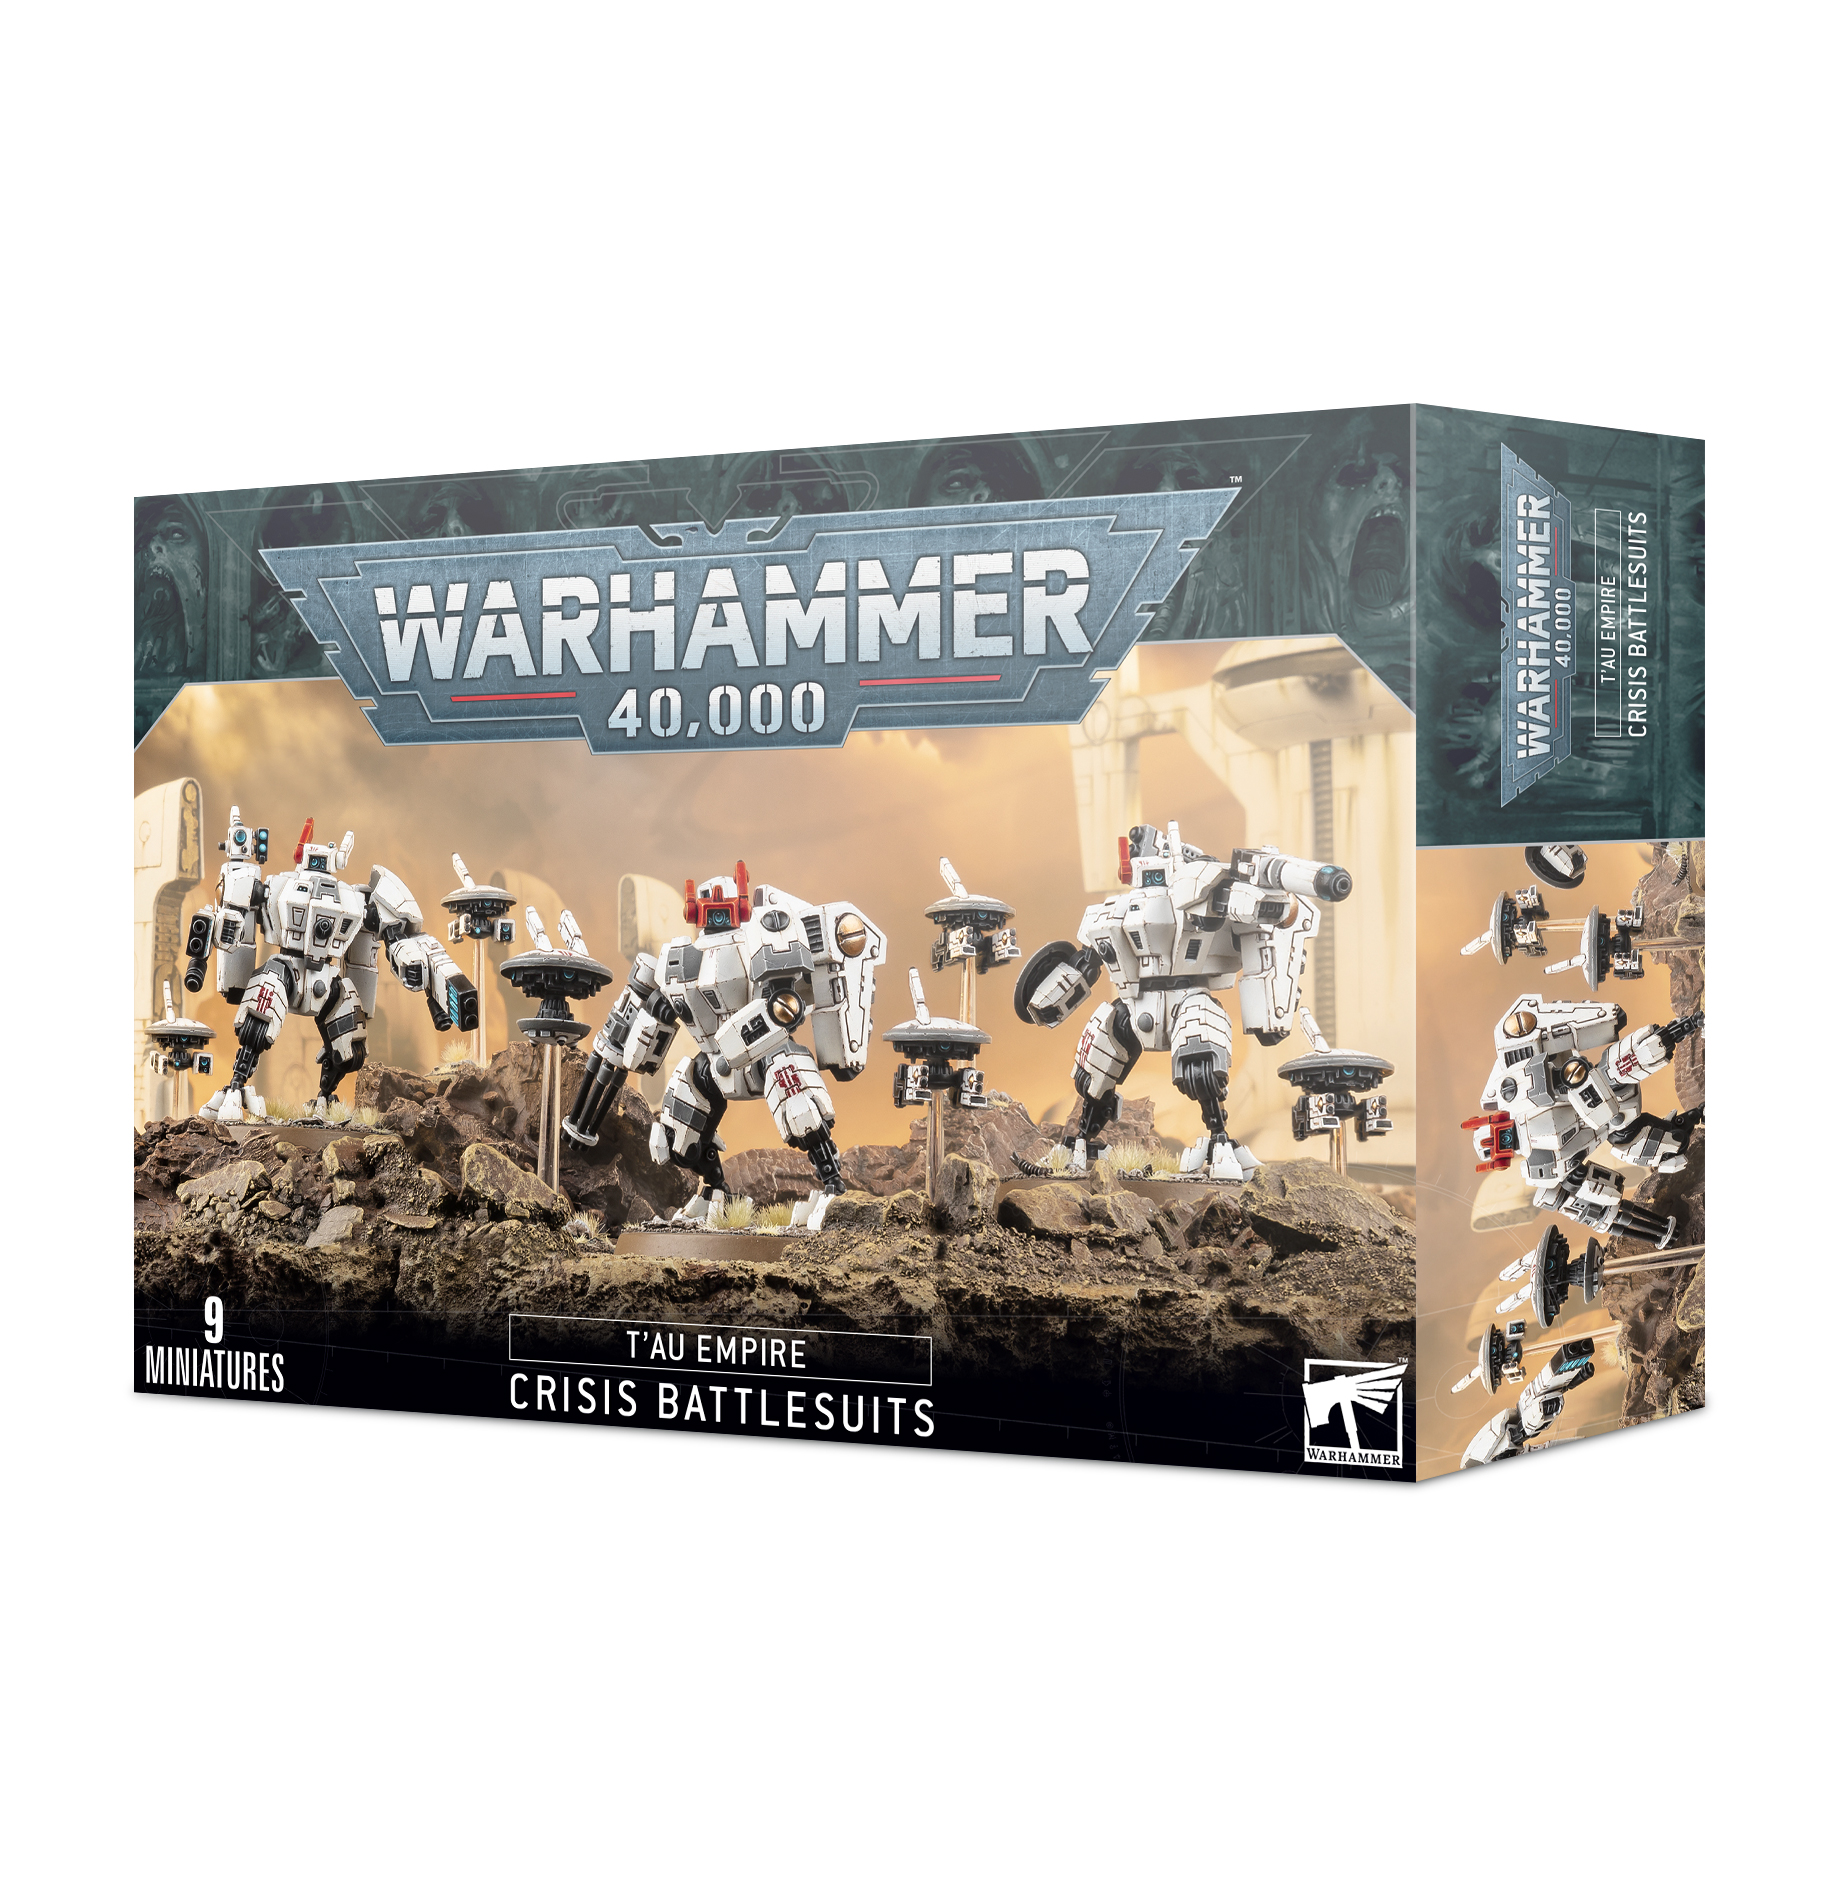 Warhammer 40,000: Tau Empire: XV8 Crisis Battlesuit Team 